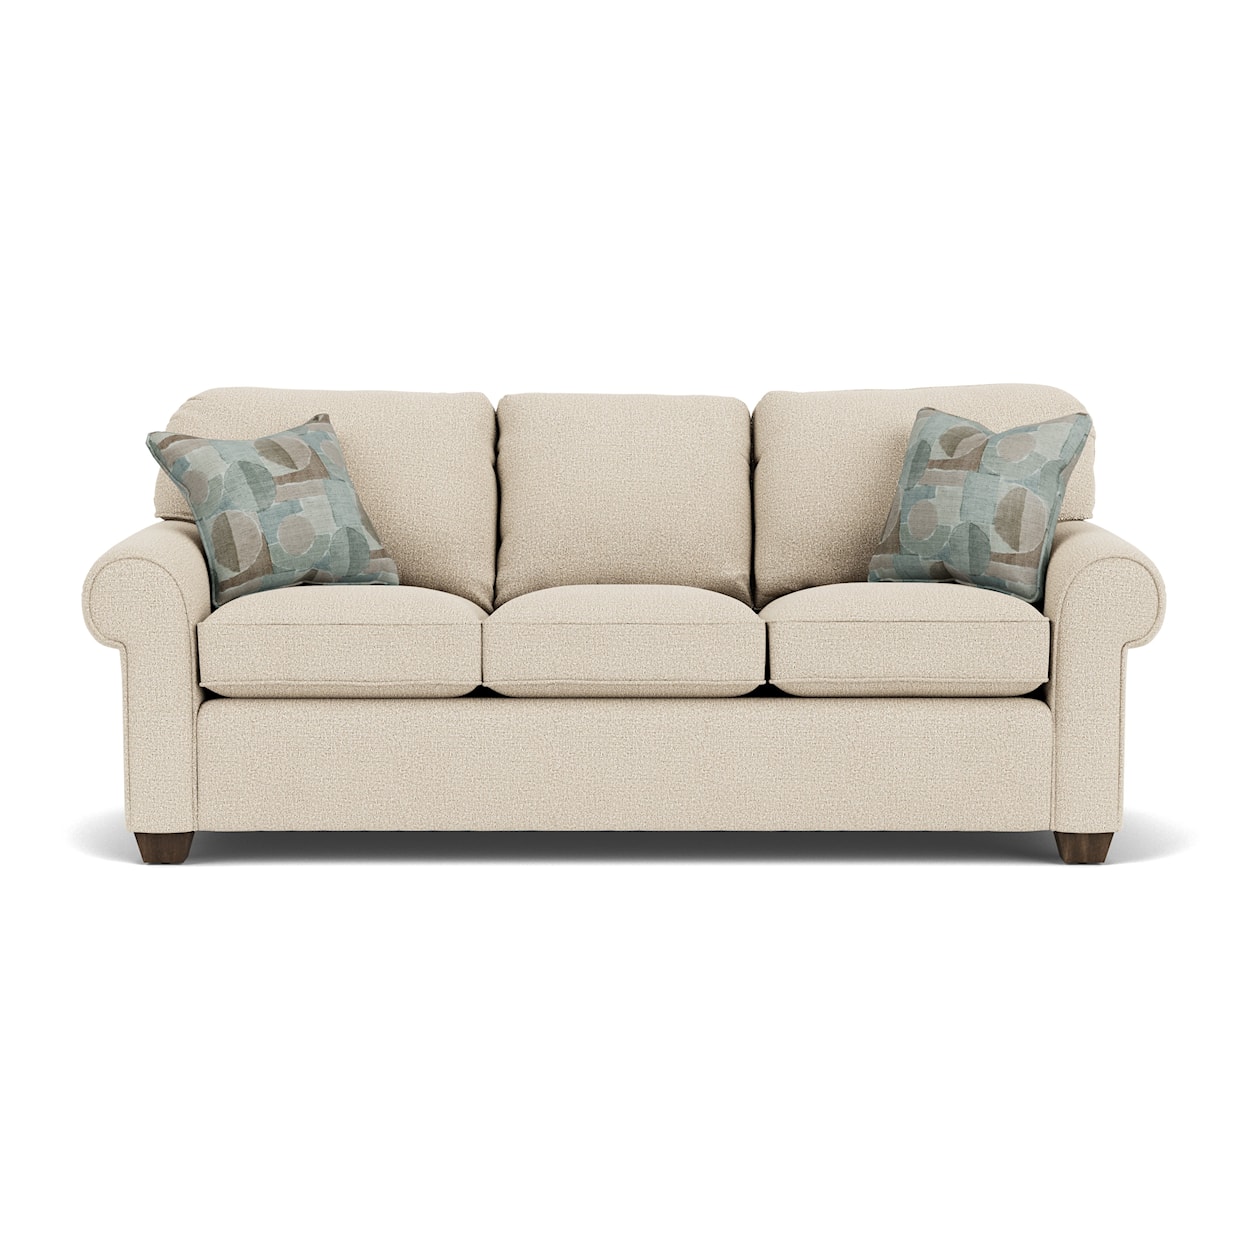 Flexsteel Thornton 5535 Queen Sleeper Sofa